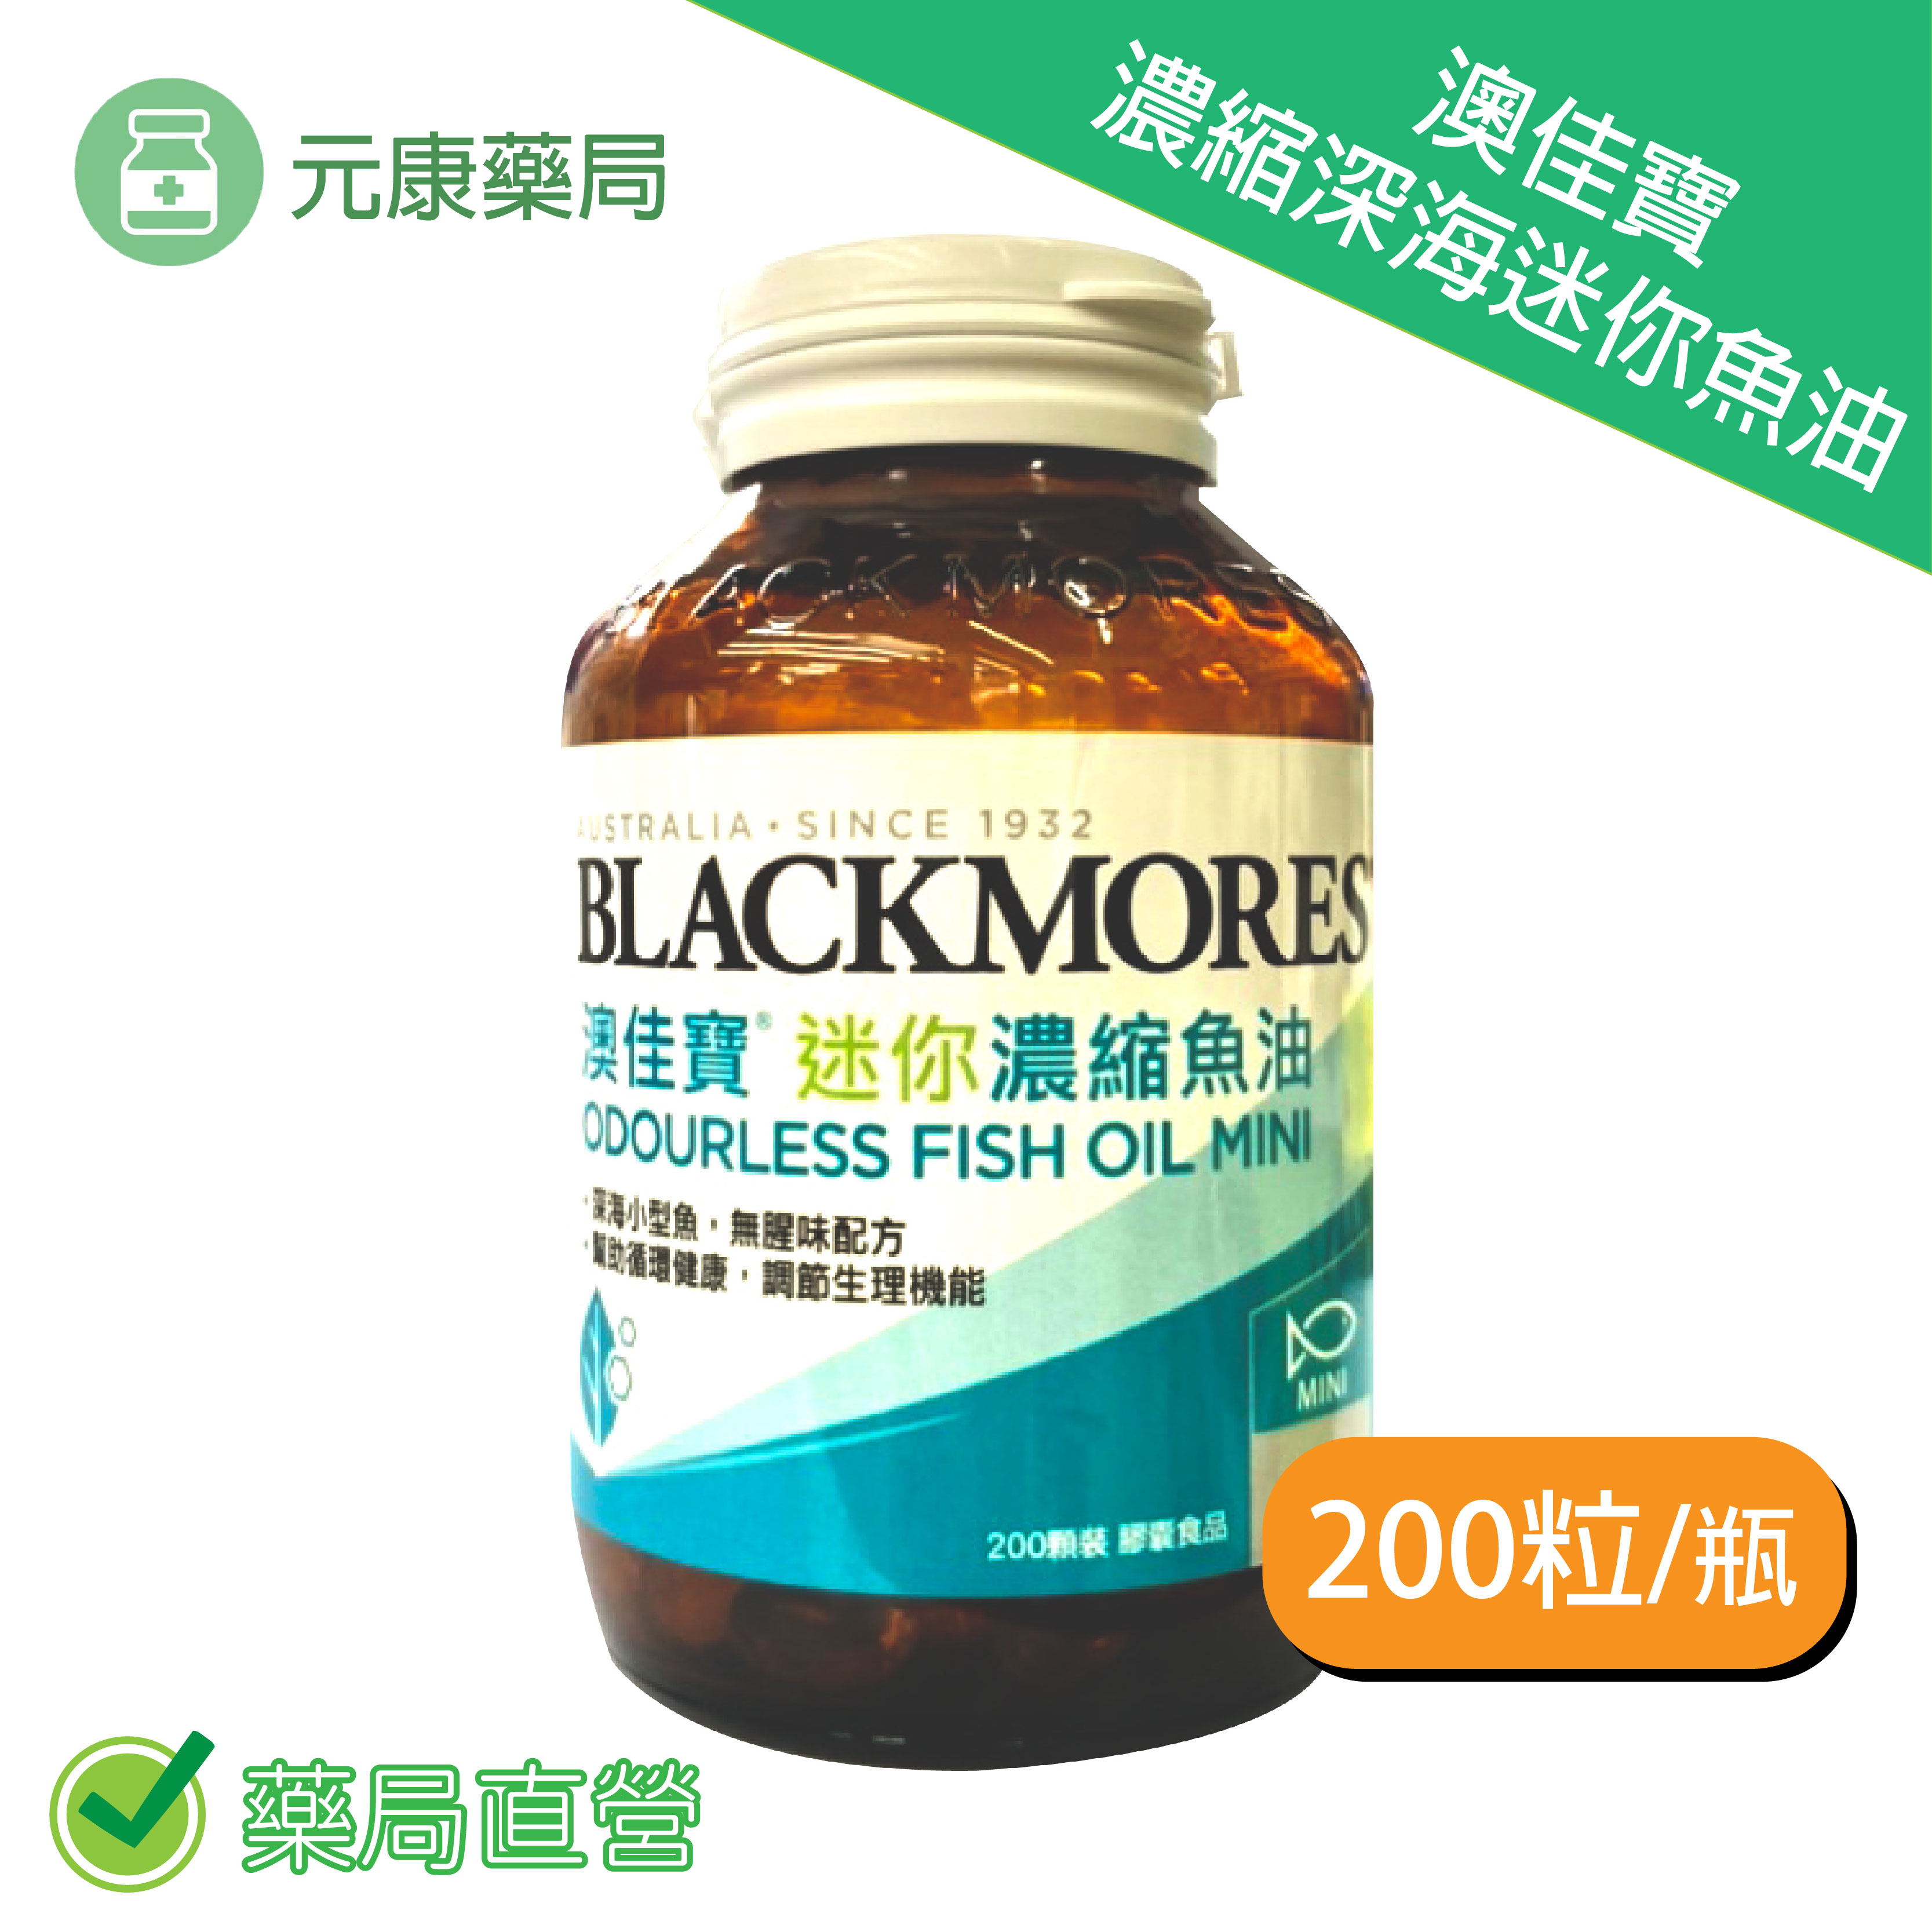 澳佳寶魚油Blackmores 迷你膠囊 無腥味濃縮深海魚油(200顆/瓶)